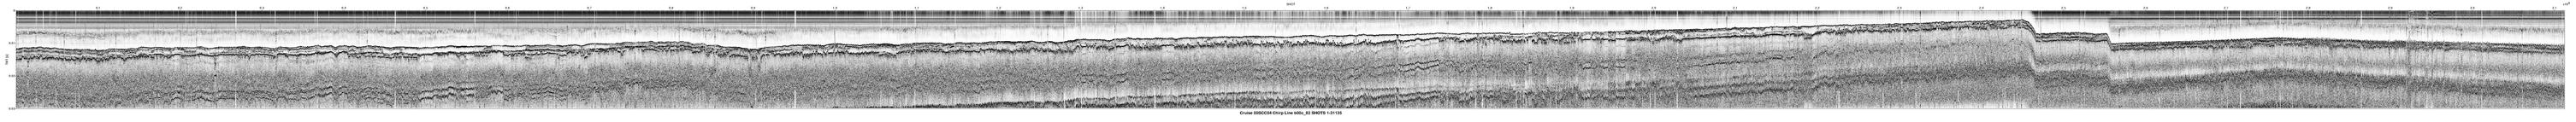 00SCC04 b00c_82 seismic profile image